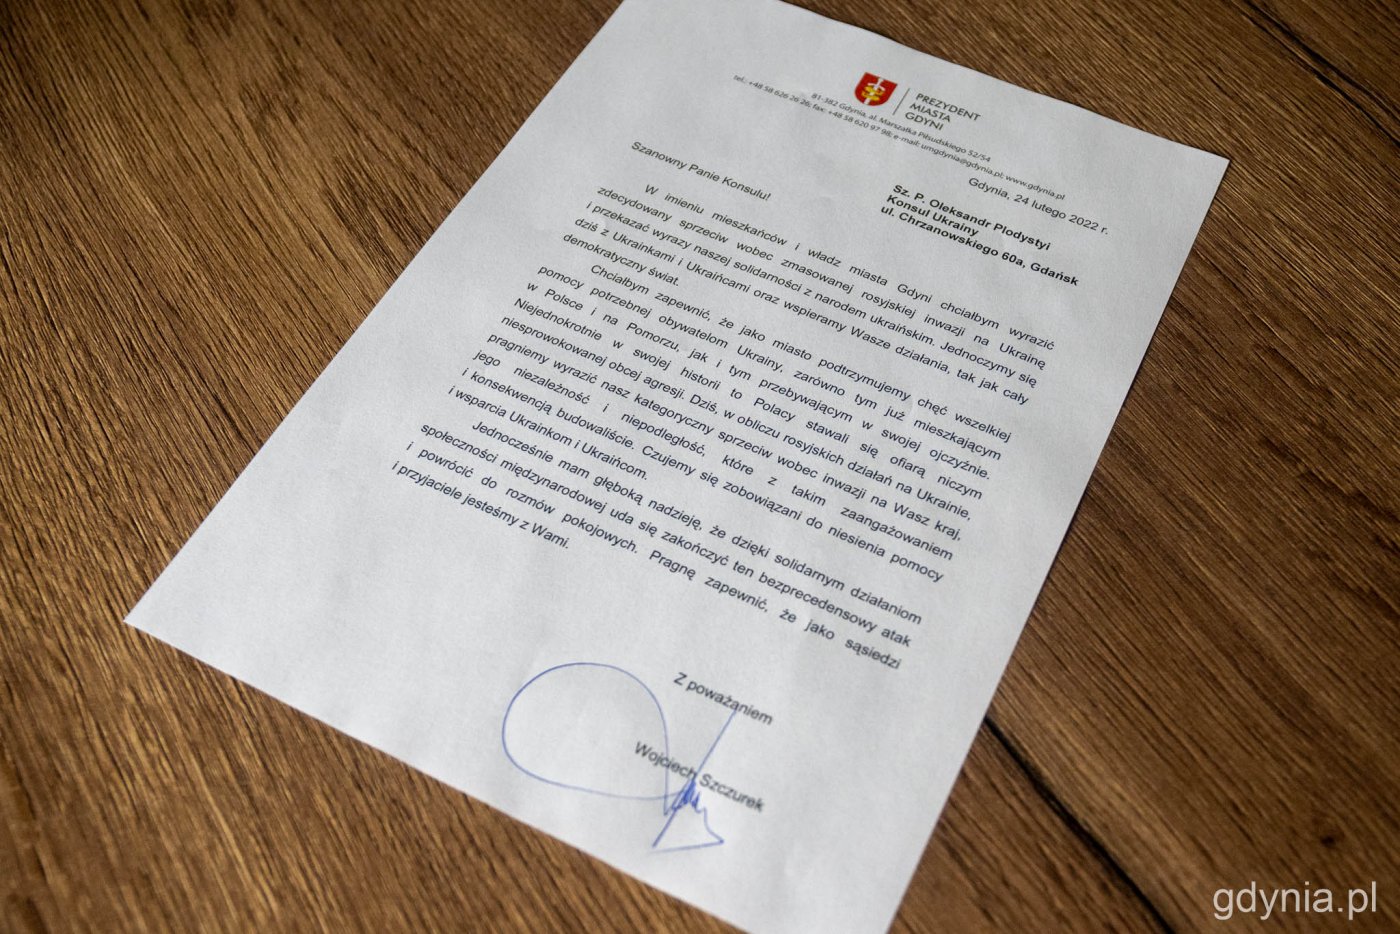 Prezydent Gdyni wystosował list ze słowami wsparcia do Konsula Ukrainy w Gdańsku, fot. Paweł Kukla